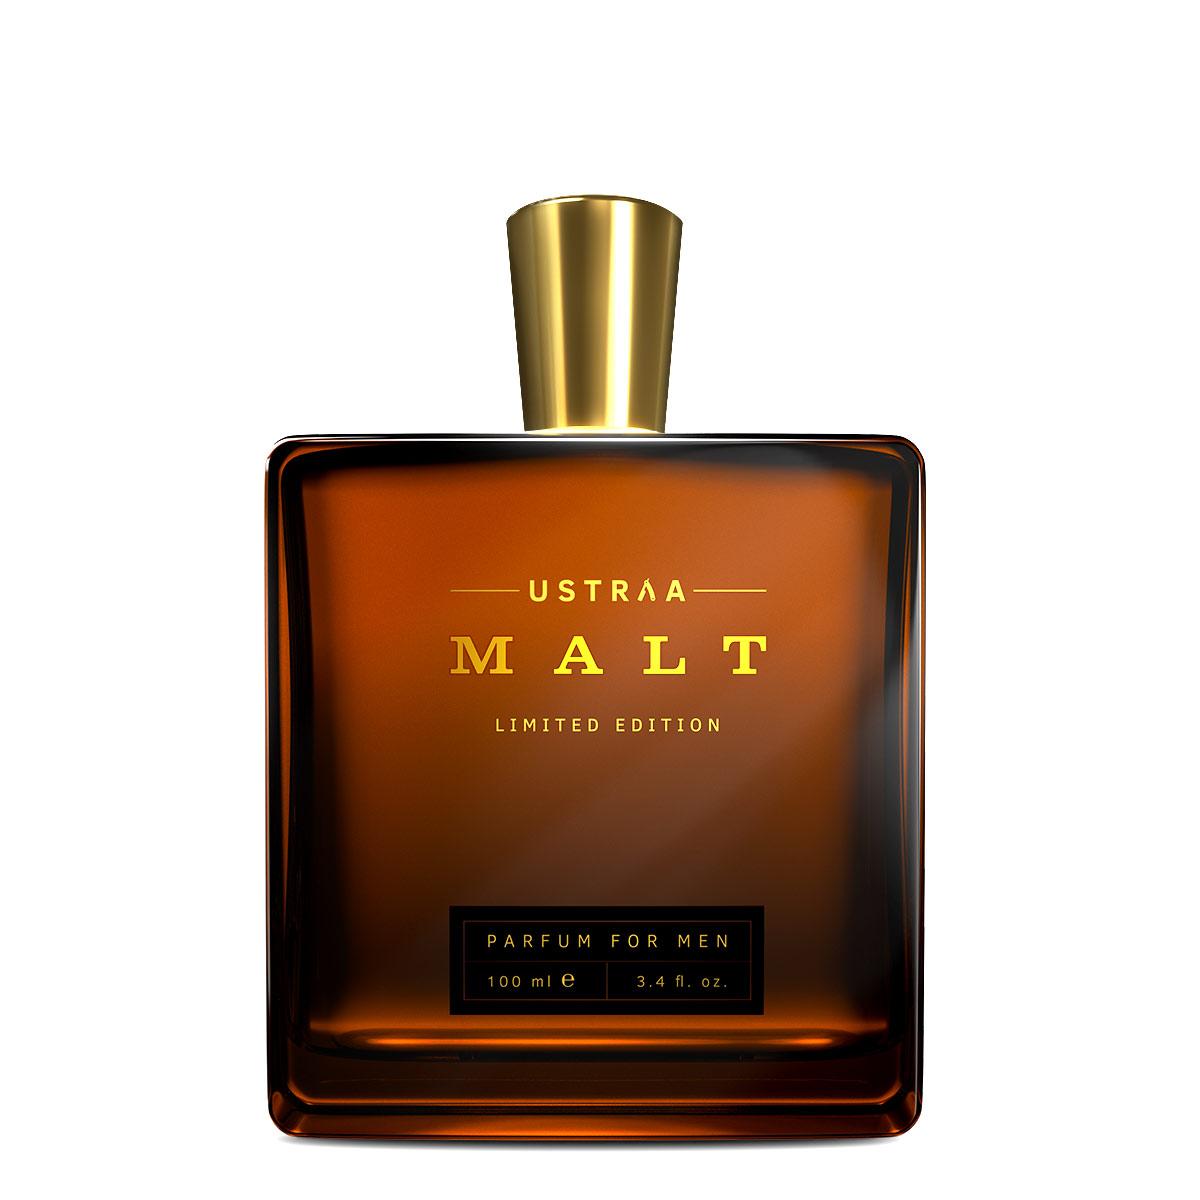 Malt - Perfume For Men - 100ml